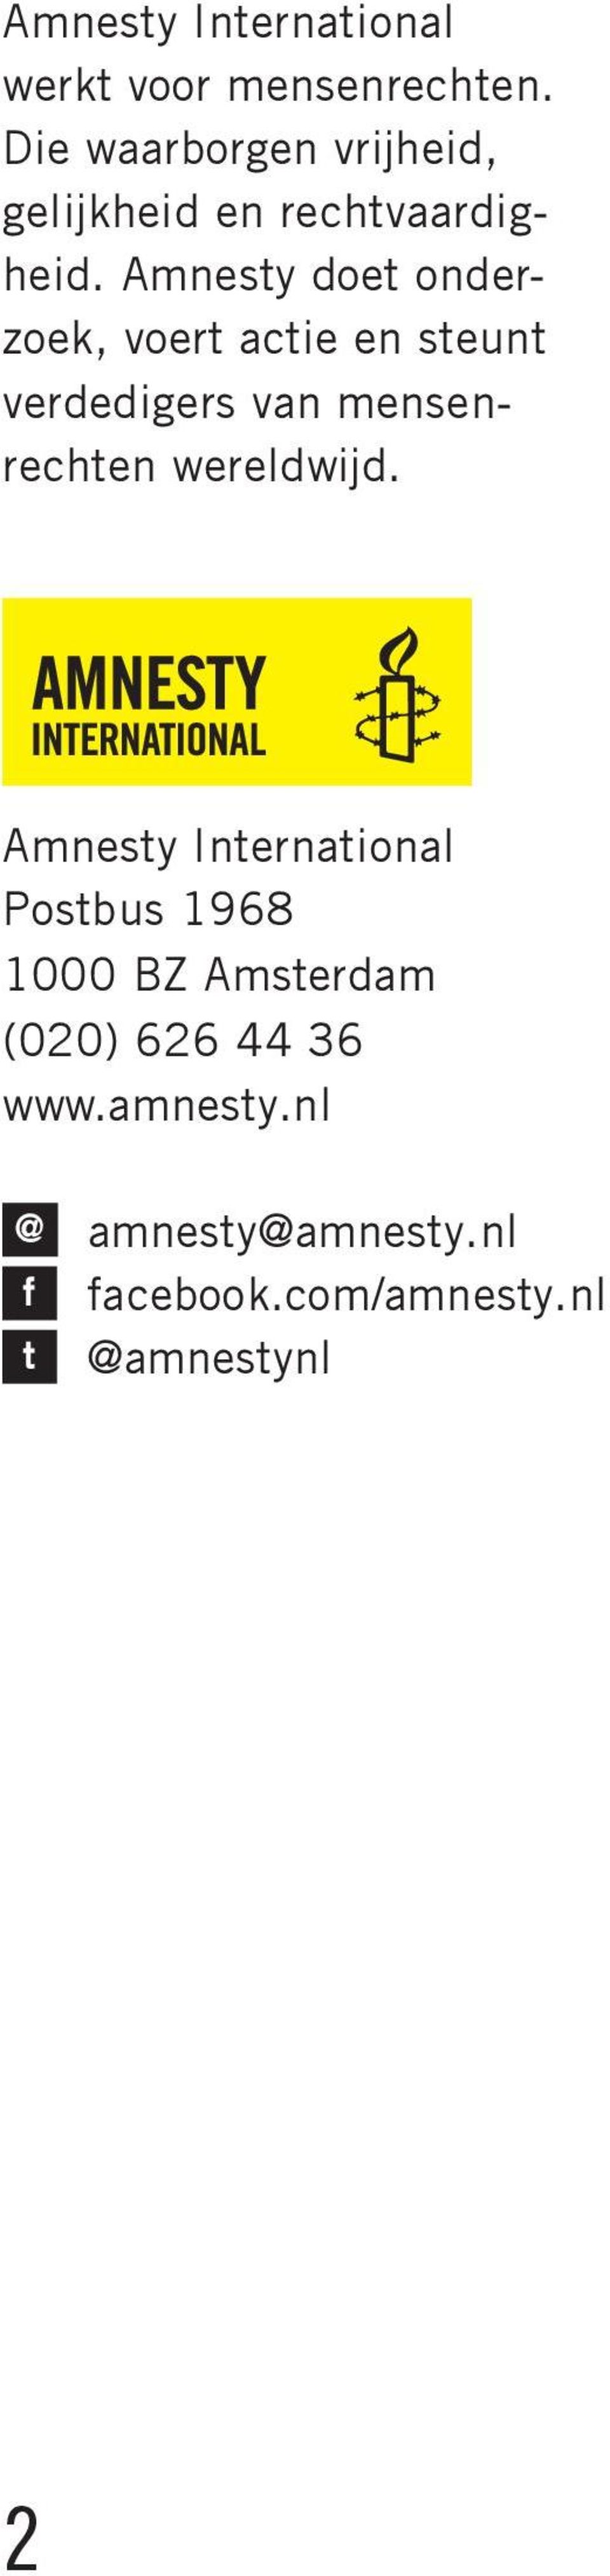 Amnesty doet onderzoek, voert actie en steunt verdedigers van mensenrechten